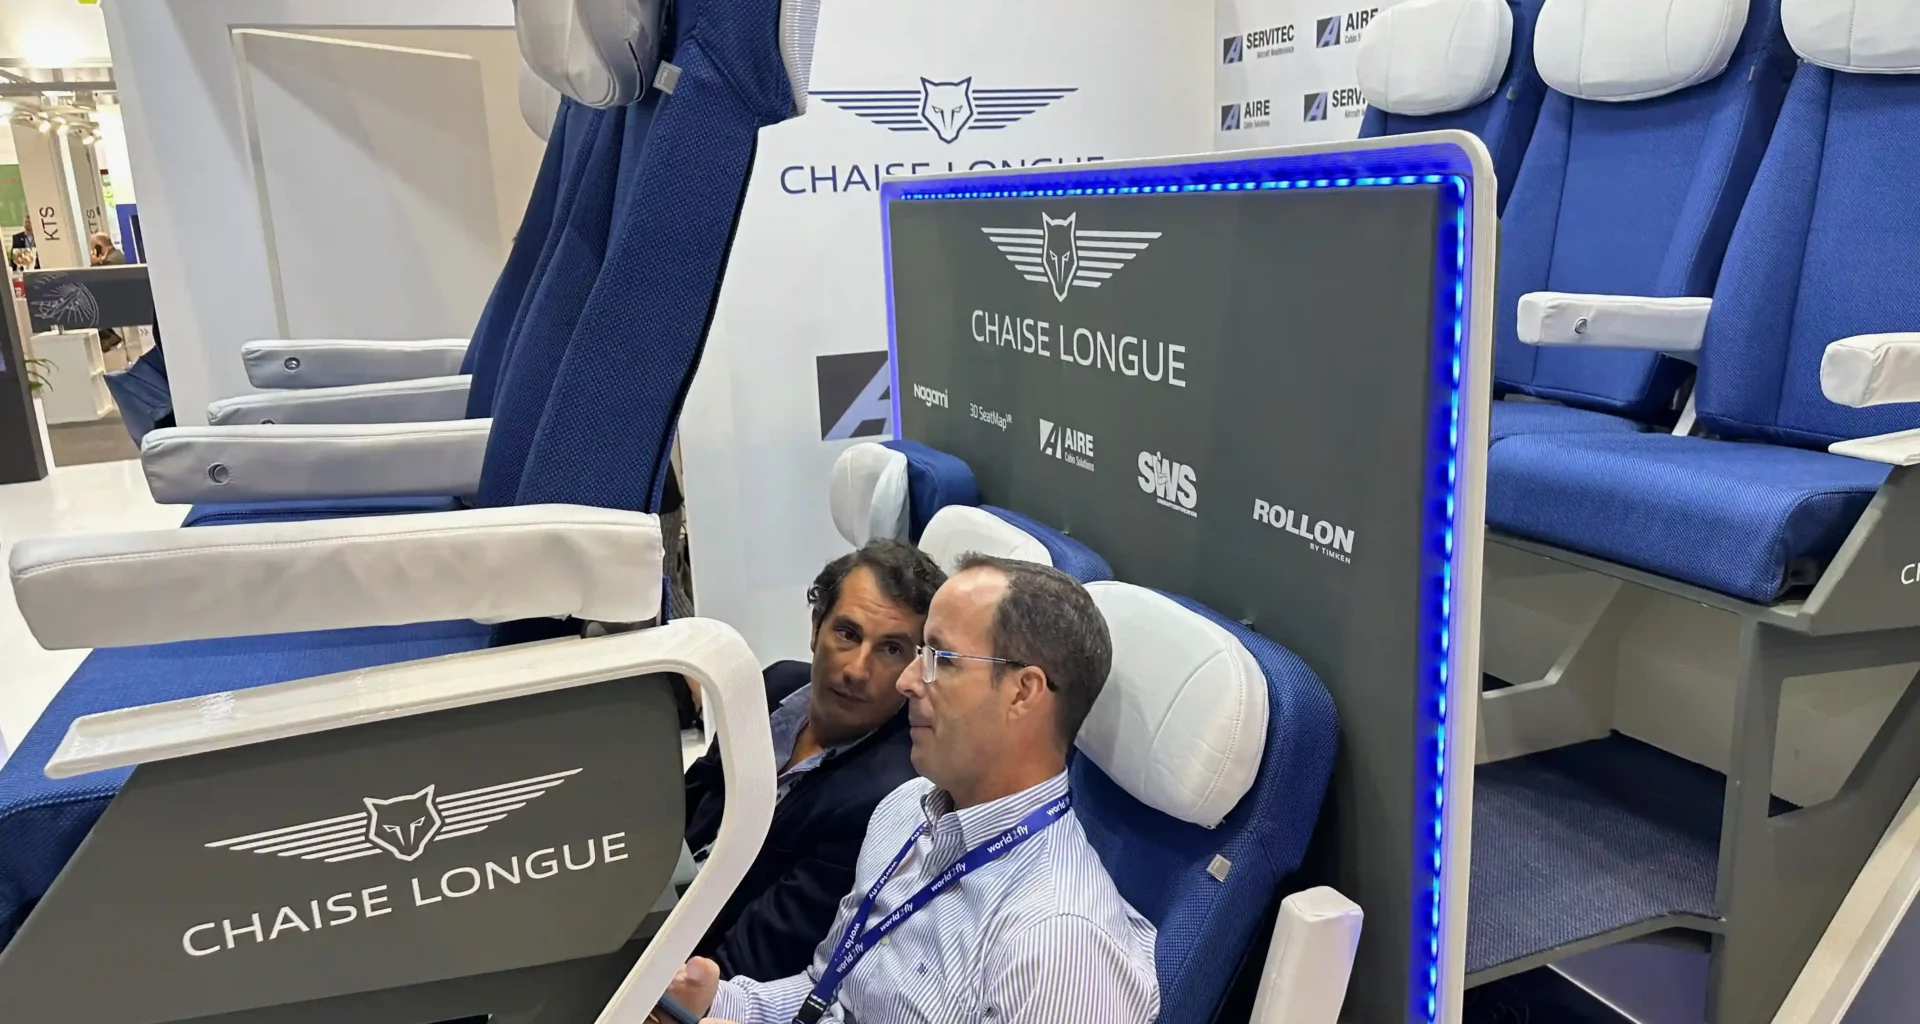 Chaise Longue Double-Decker Seat Concept